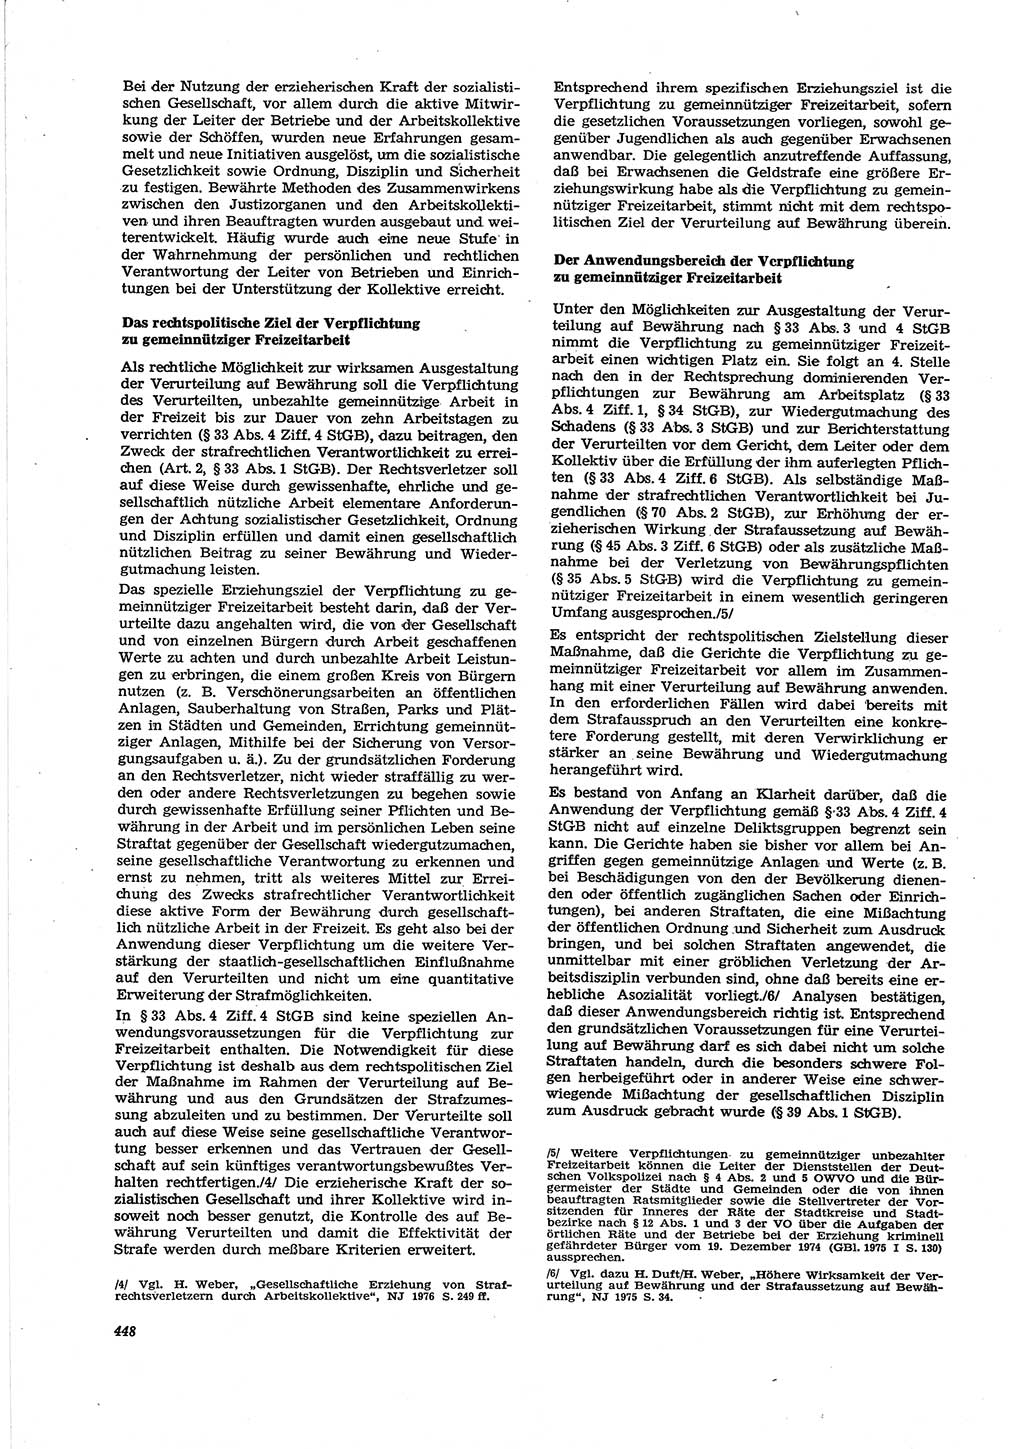 Neue Justiz (NJ), Zeitschrift für Recht und Rechtswissenschaft [Deutsche Demokratische Republik (DDR)], 30. Jahrgang 1976, Seite 448 (NJ DDR 1976, S. 448)